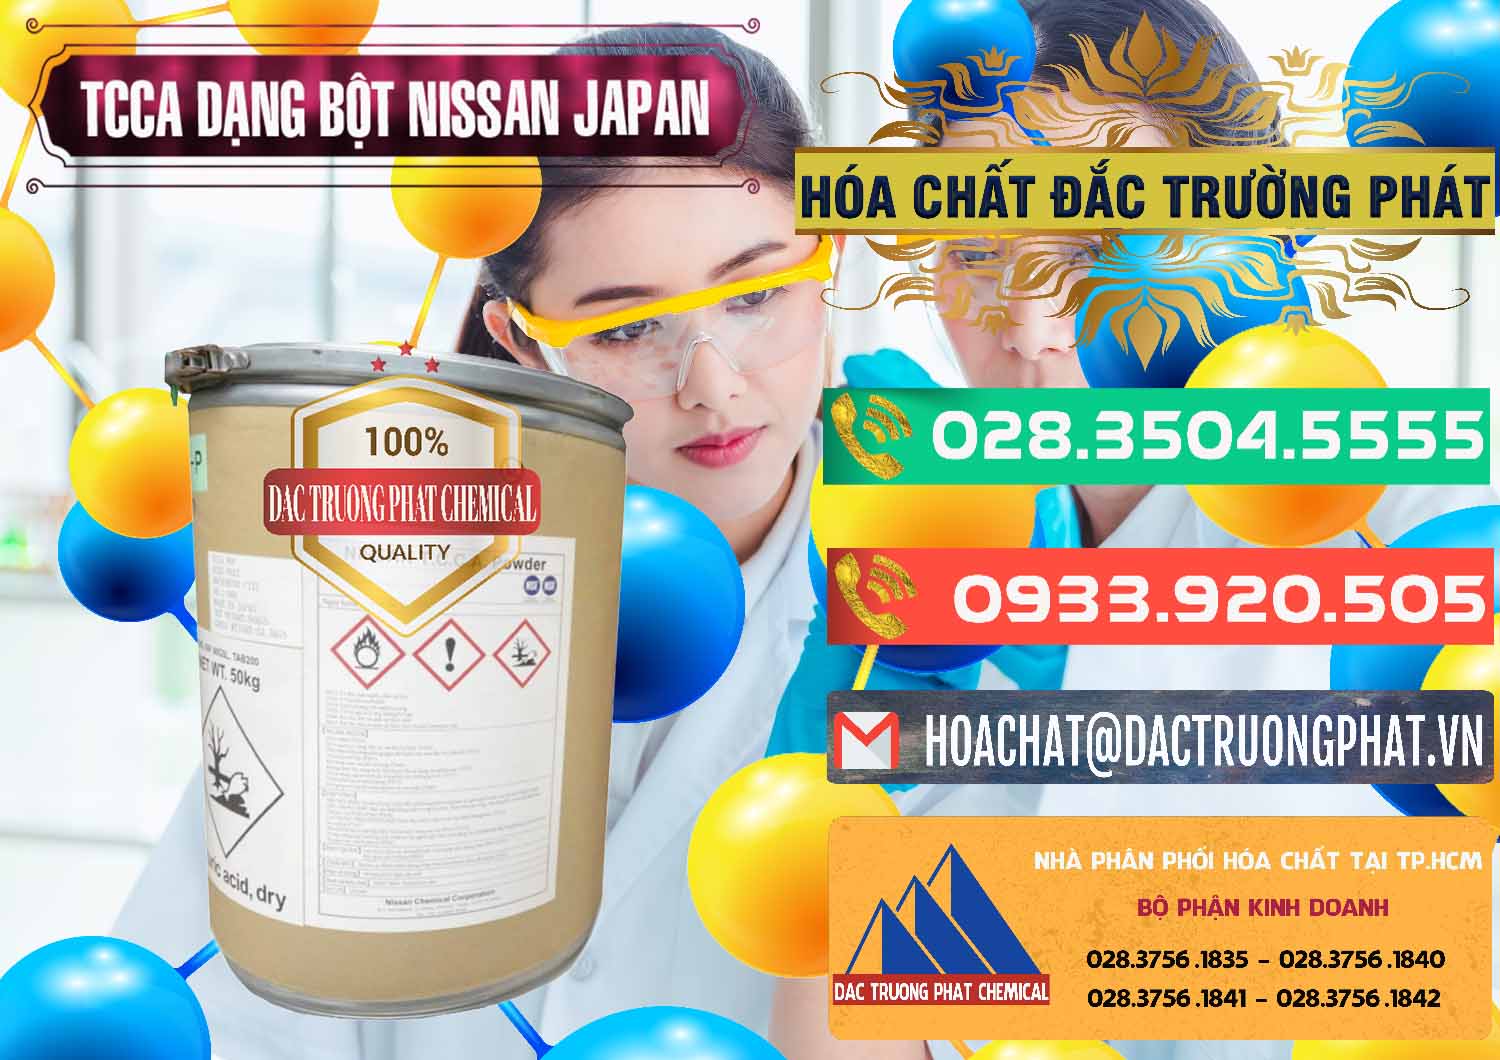 Cty phân phối - bán TCCA - Acid Trichloroisocyanuric 90% Dạng Bột Nissan Nhật Bản Japan - 0375 - Đơn vị chuyên bán và phân phối hóa chất tại TP.HCM - congtyhoachat.com.vn